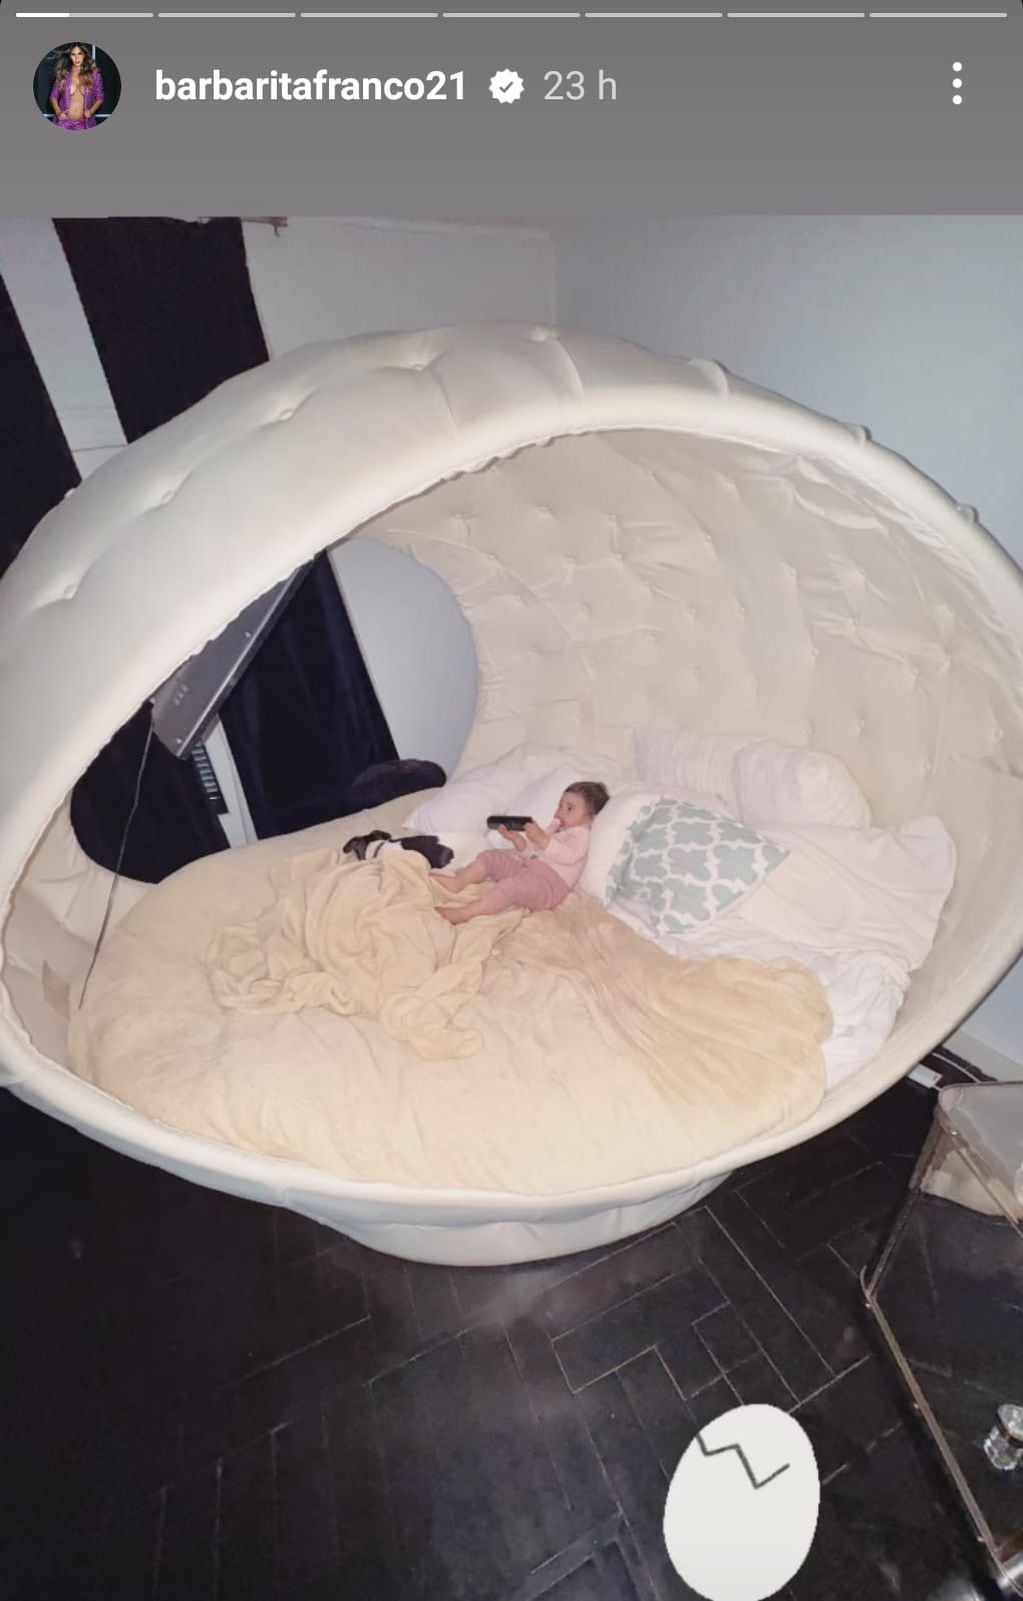 La particular “cama huevo” donde duerme la hija de Barby Franco